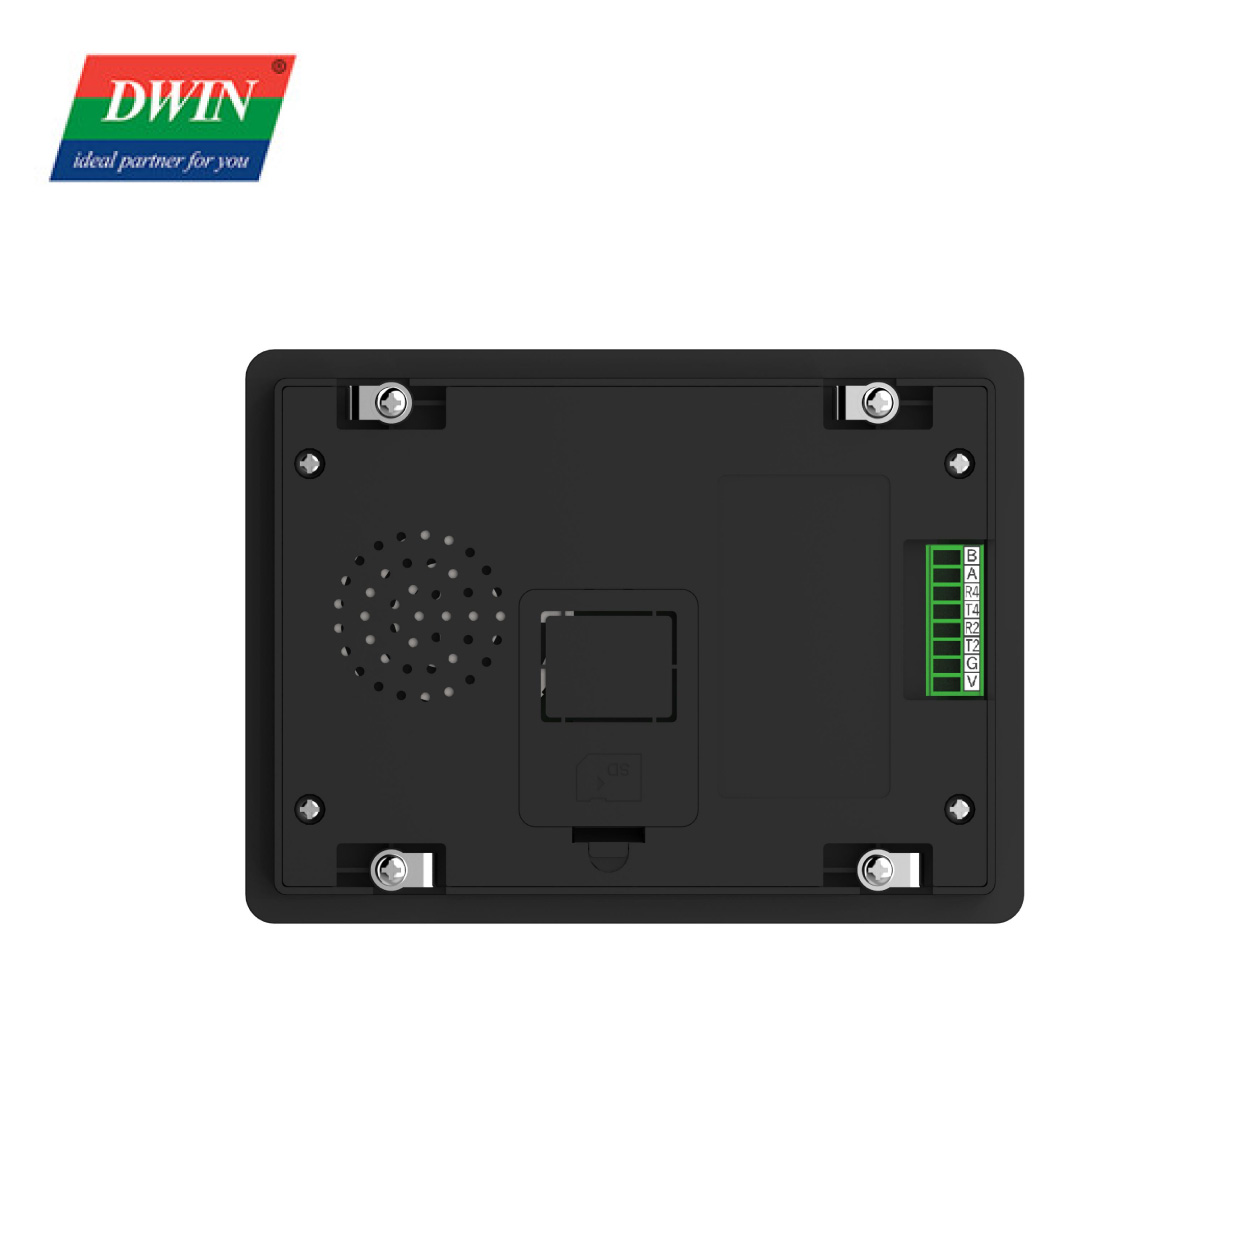 5 დიუმიანი HMI TFT LCD მოდული Shell DMG80480T050_A5W (სამრეწველო კლასის)